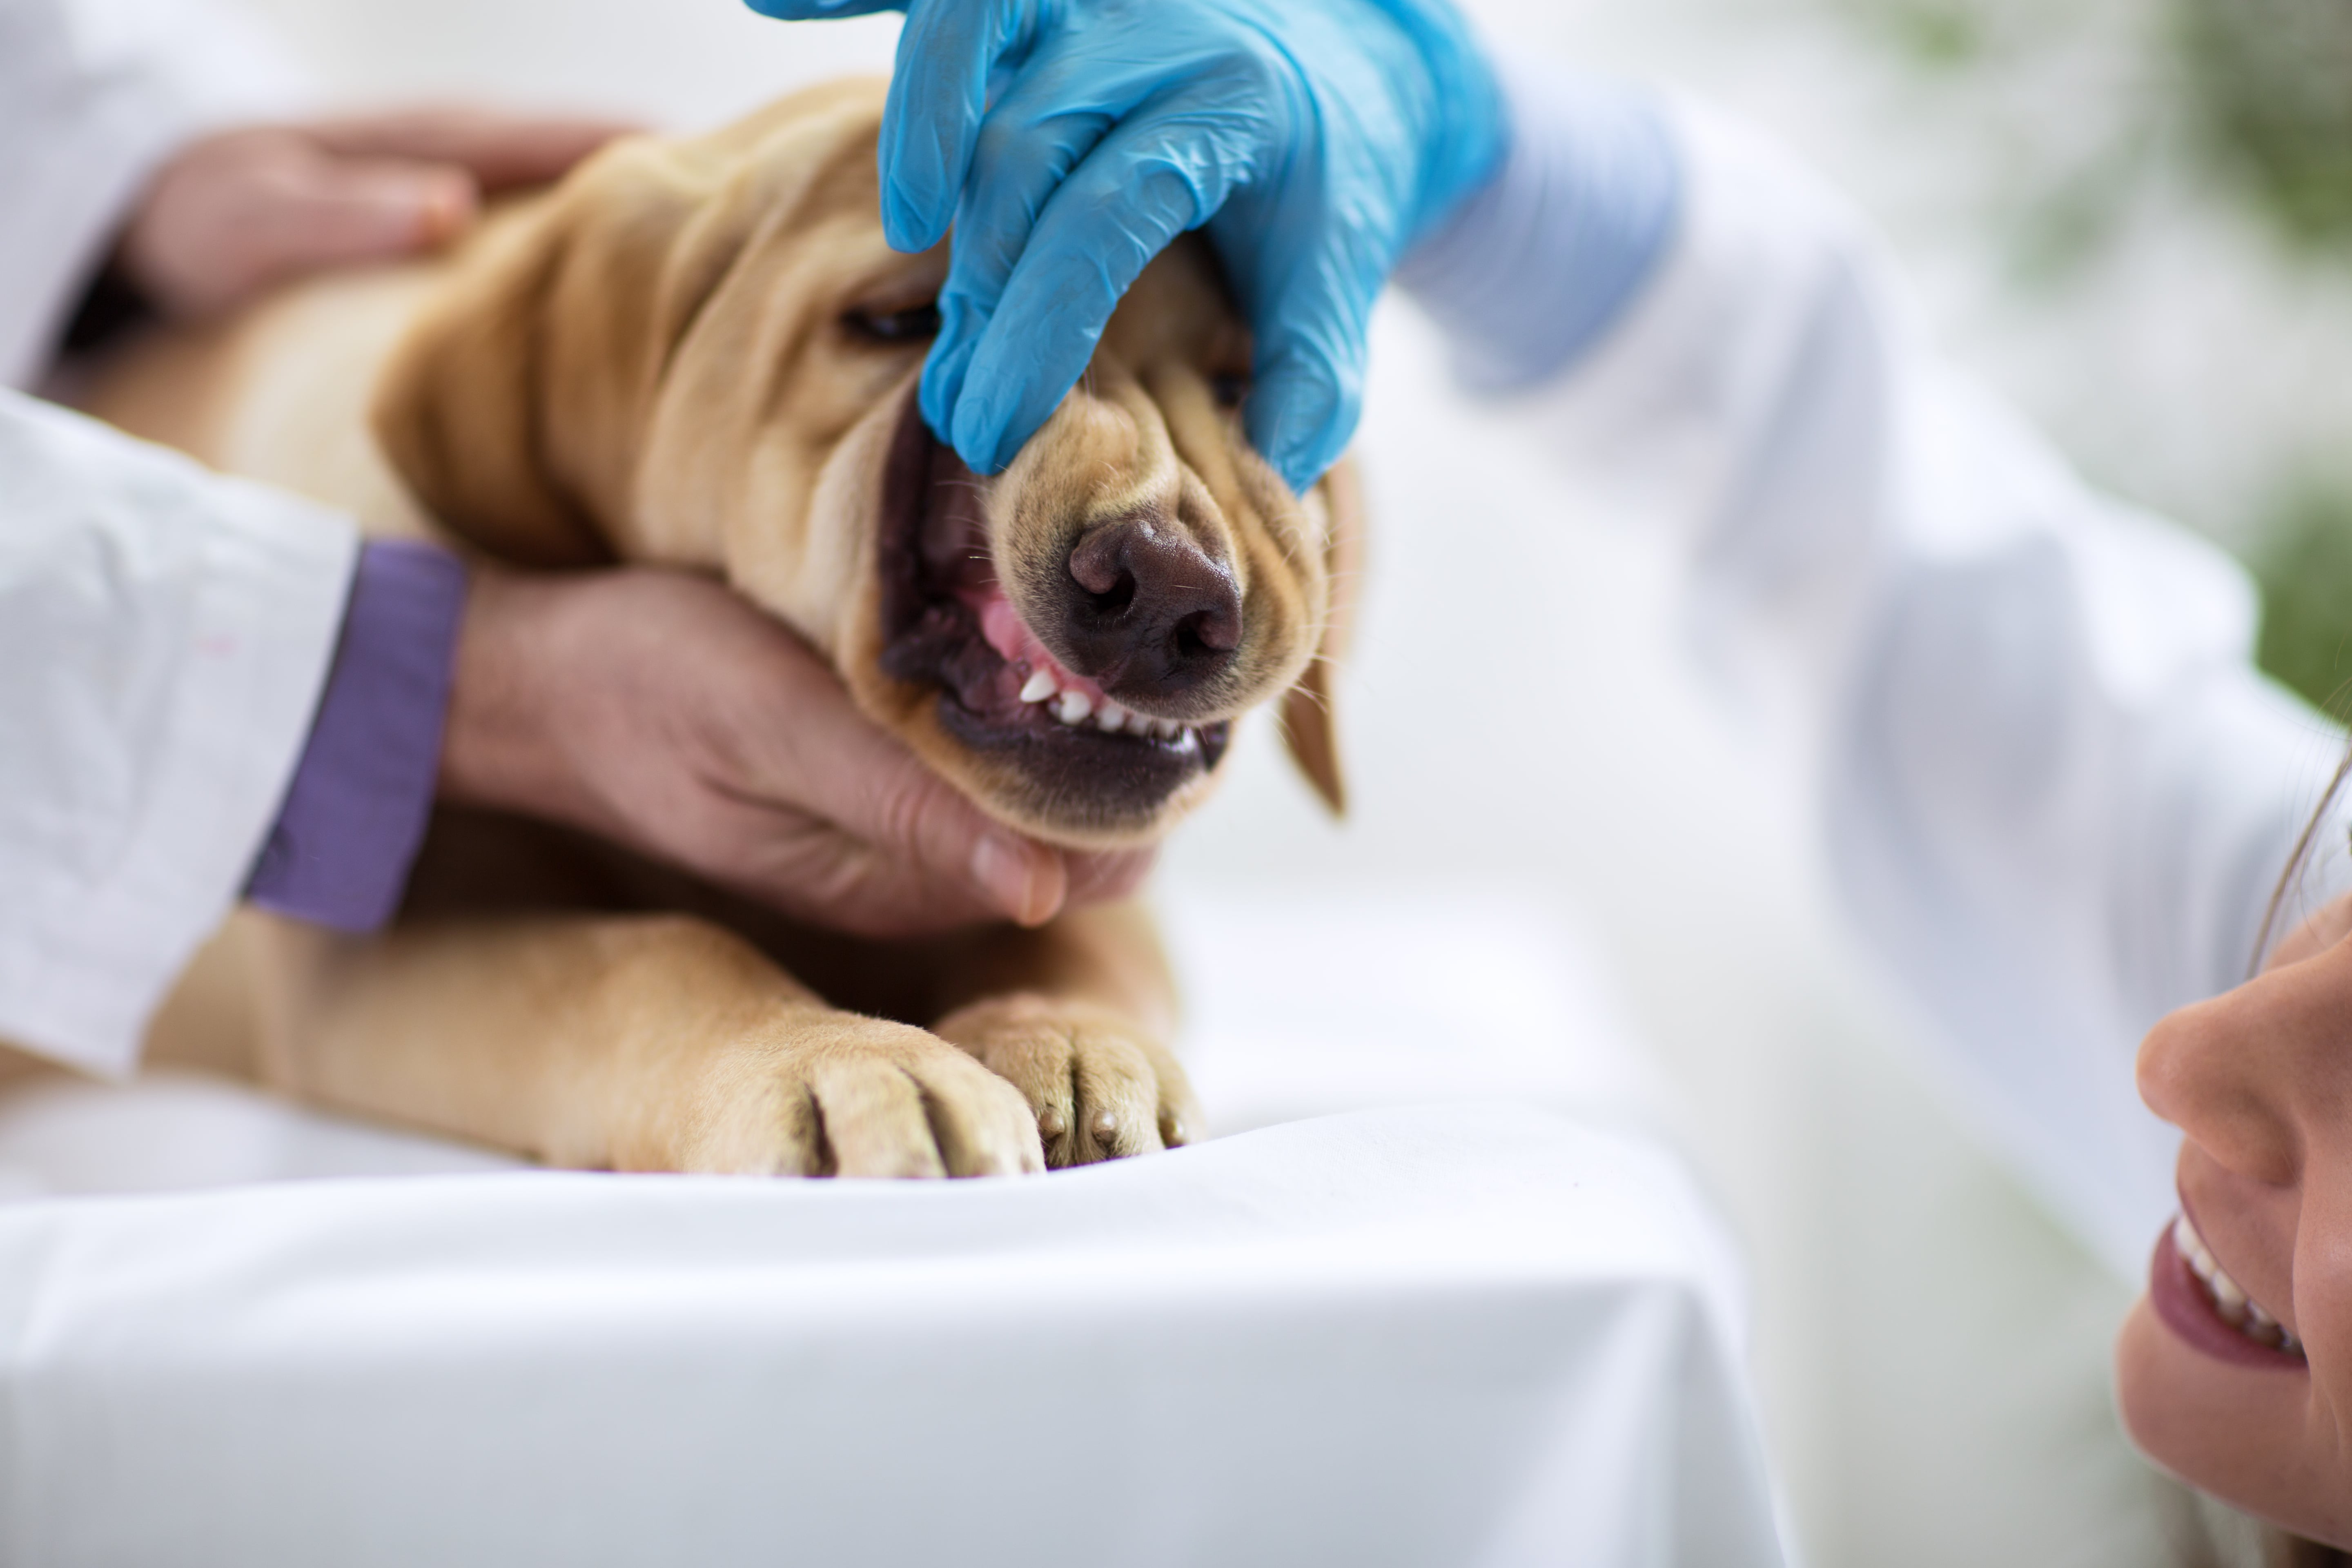 Zahnwechsel beim Hund durch Tierarzt kontrollieren